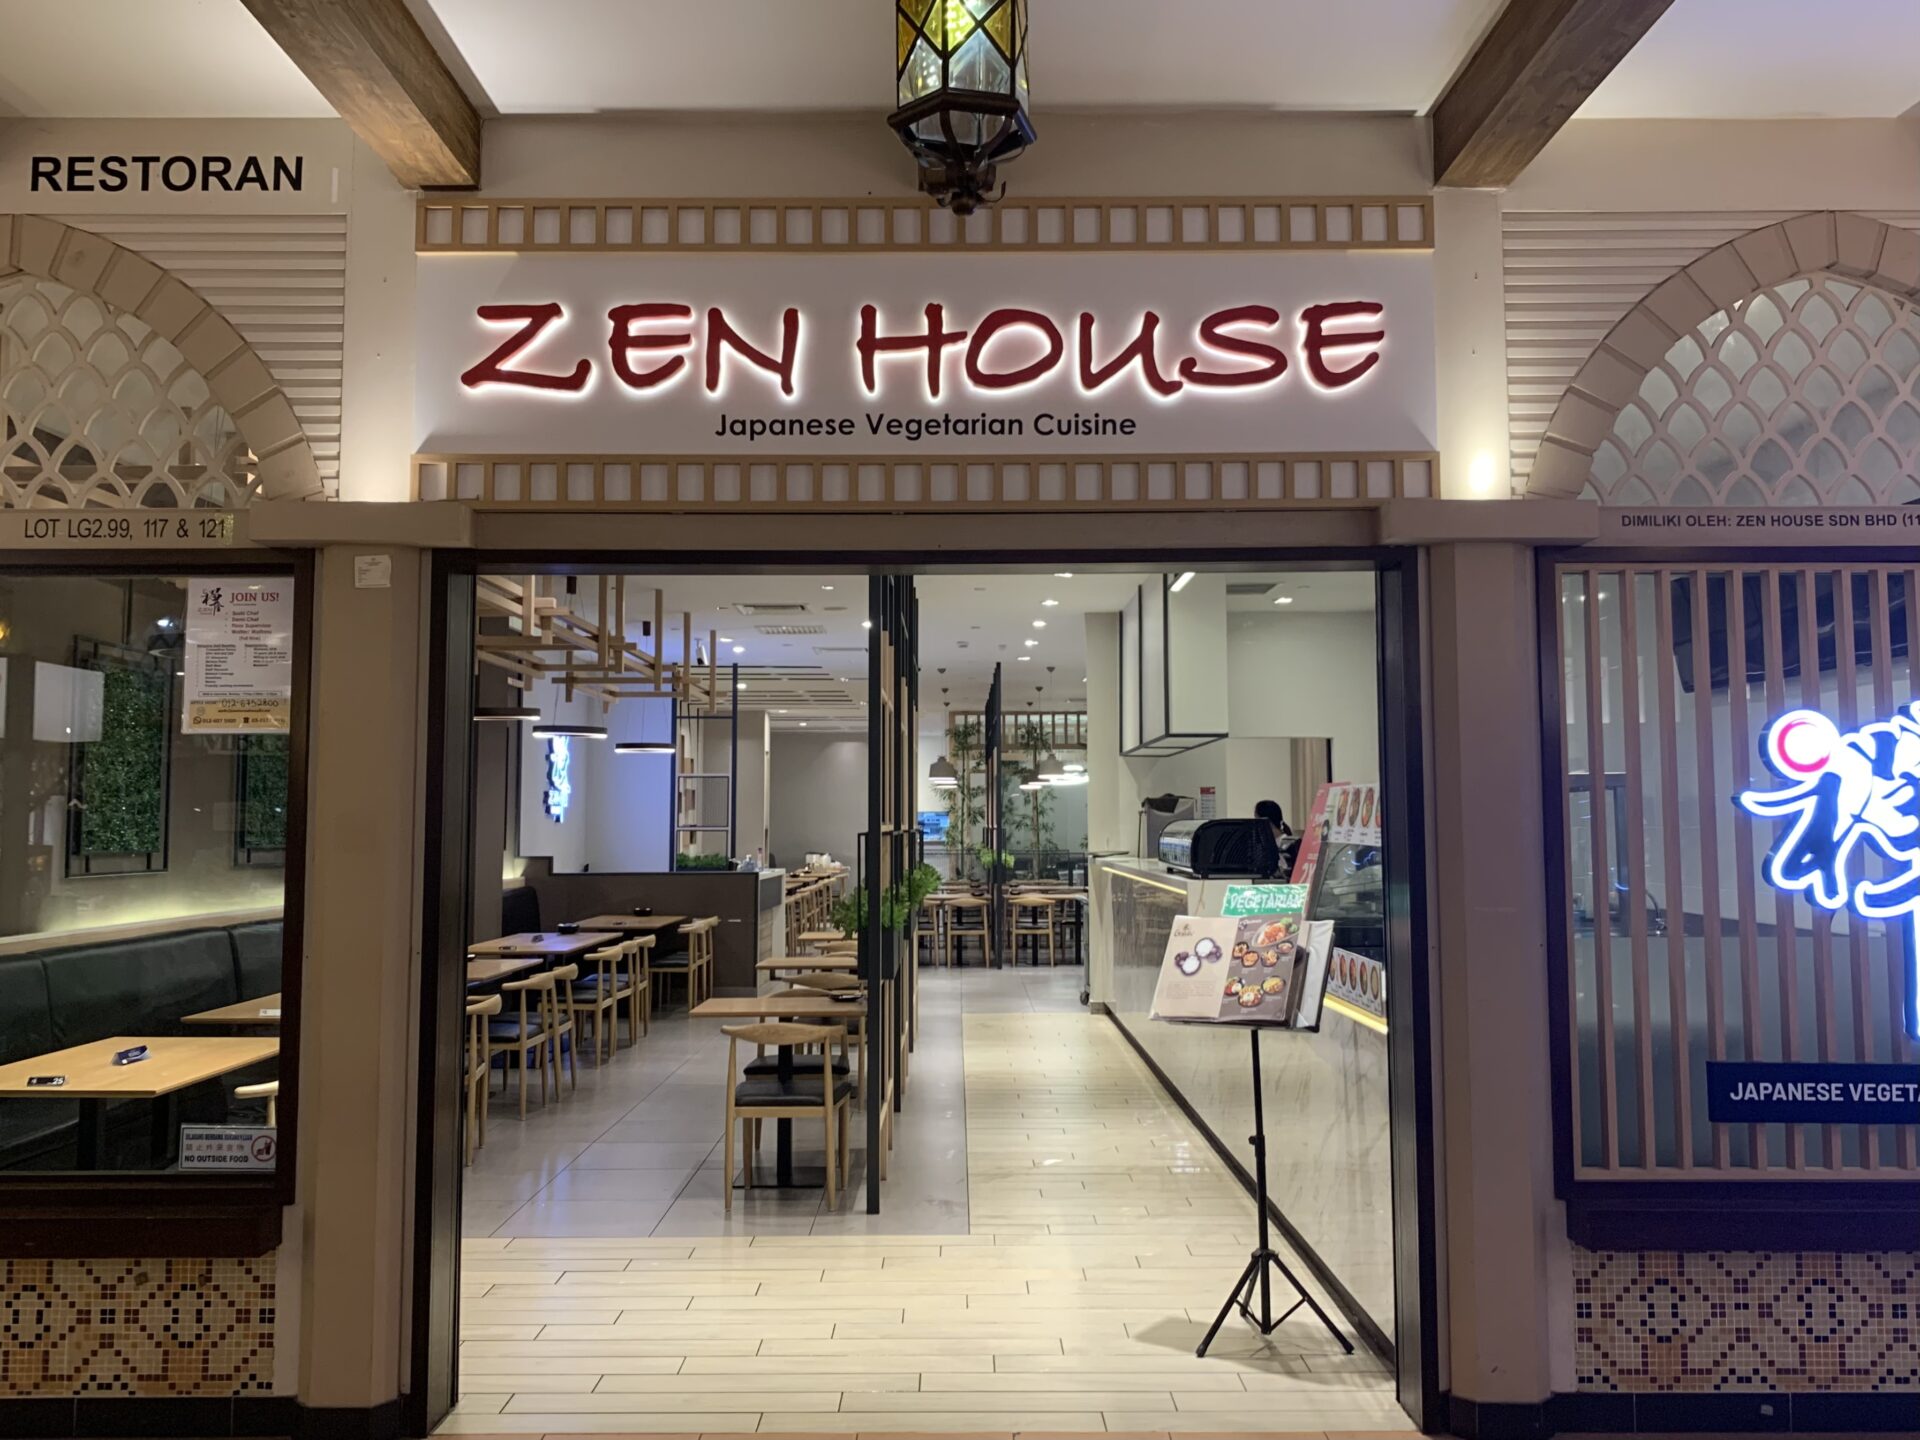 Zen House Japanese Vegetarian Restaurant - Storefront